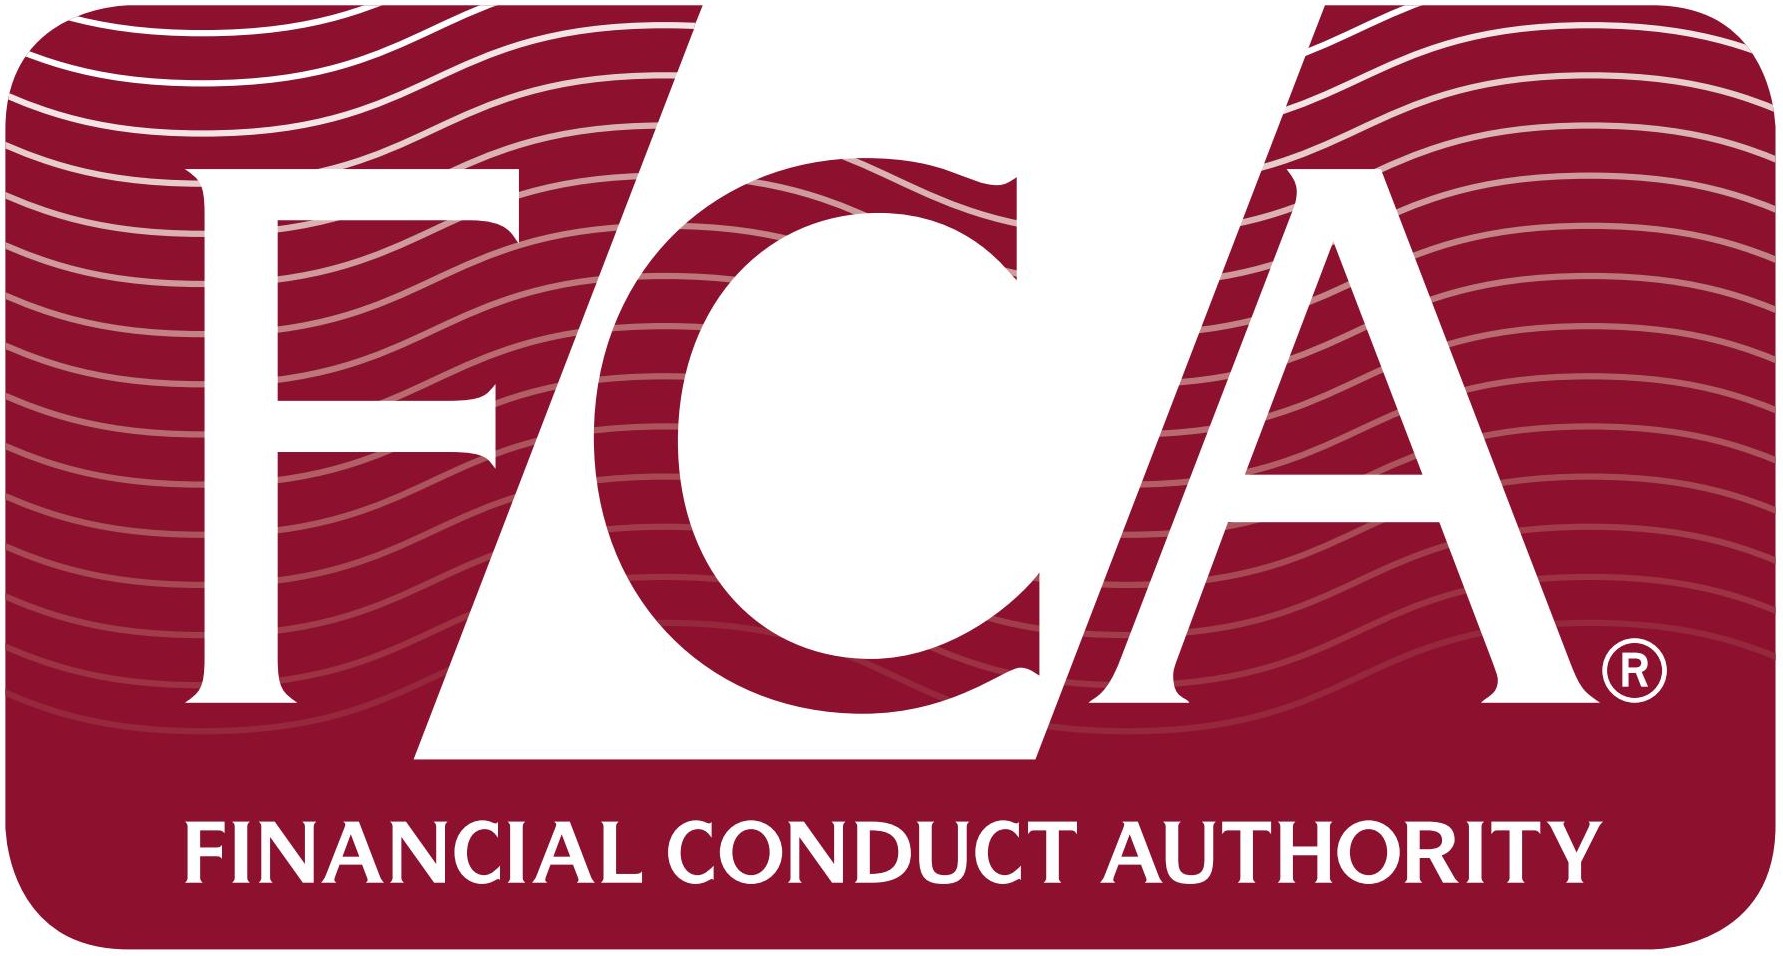 ¿Cules son los mejores brokers regulados por la FCA?